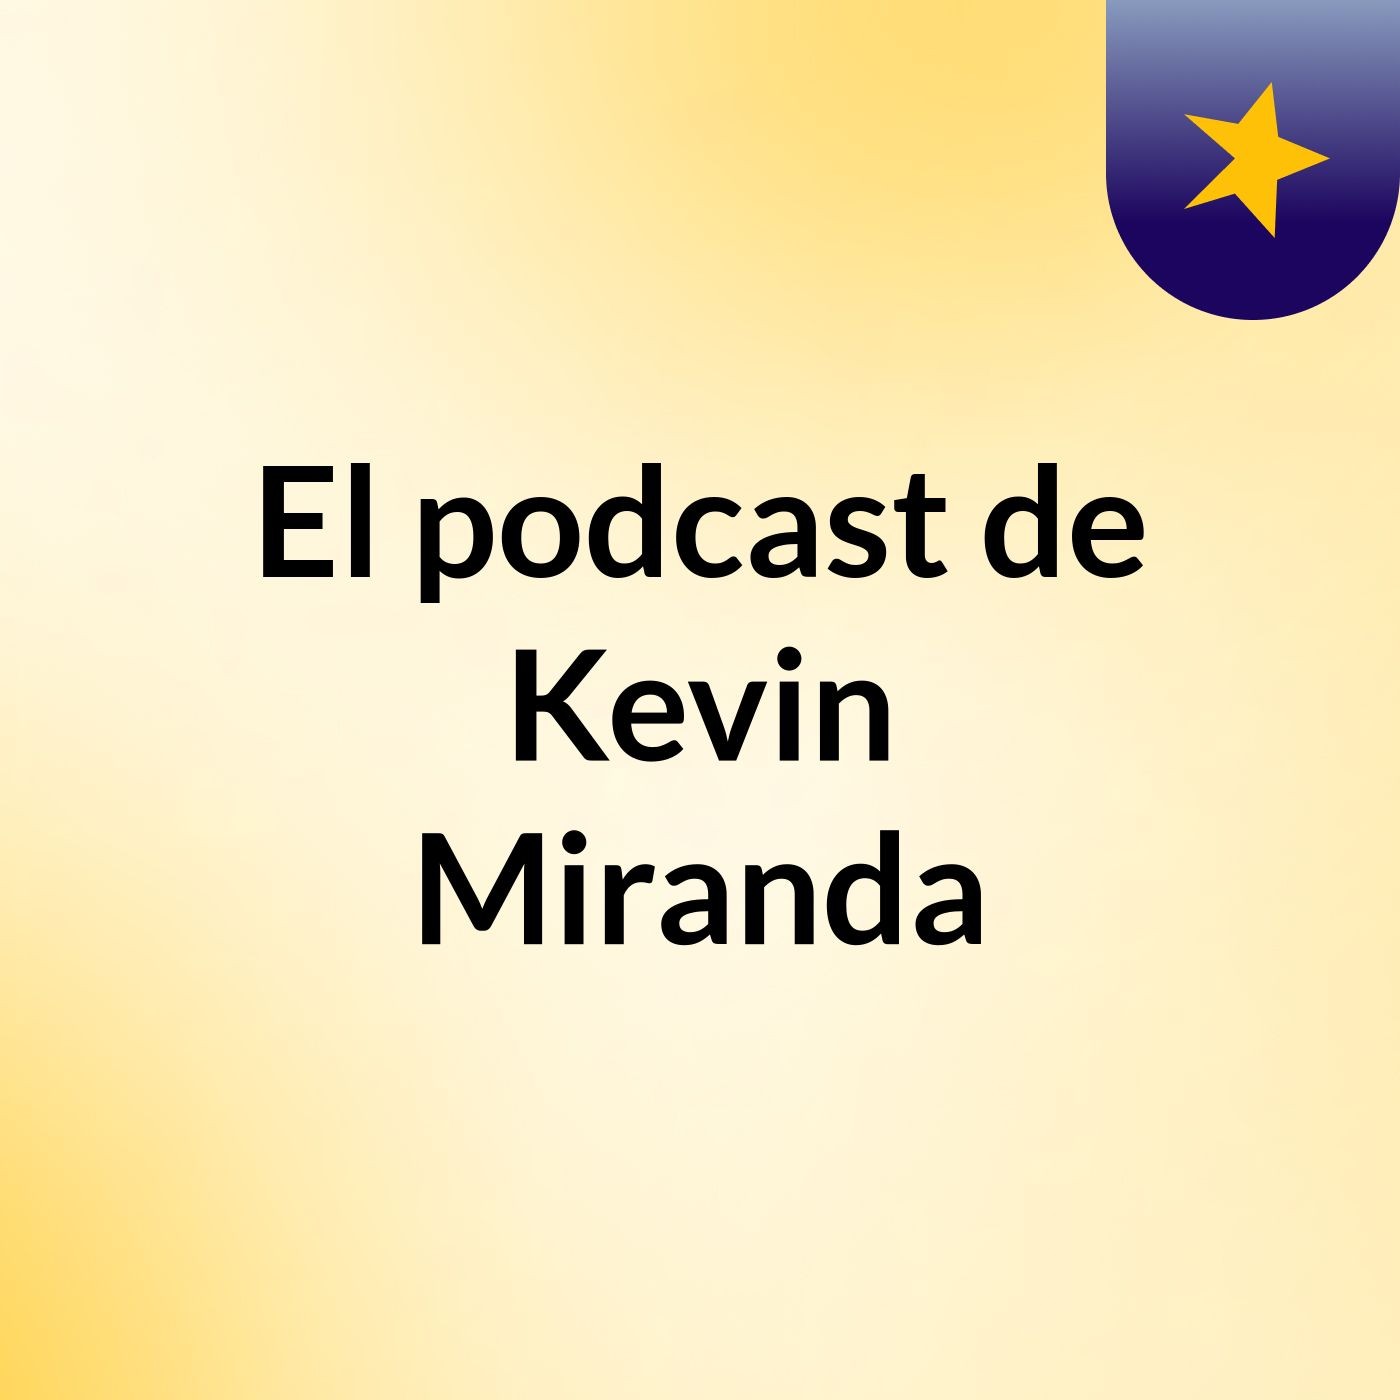 El podcast de Kevin Miranda